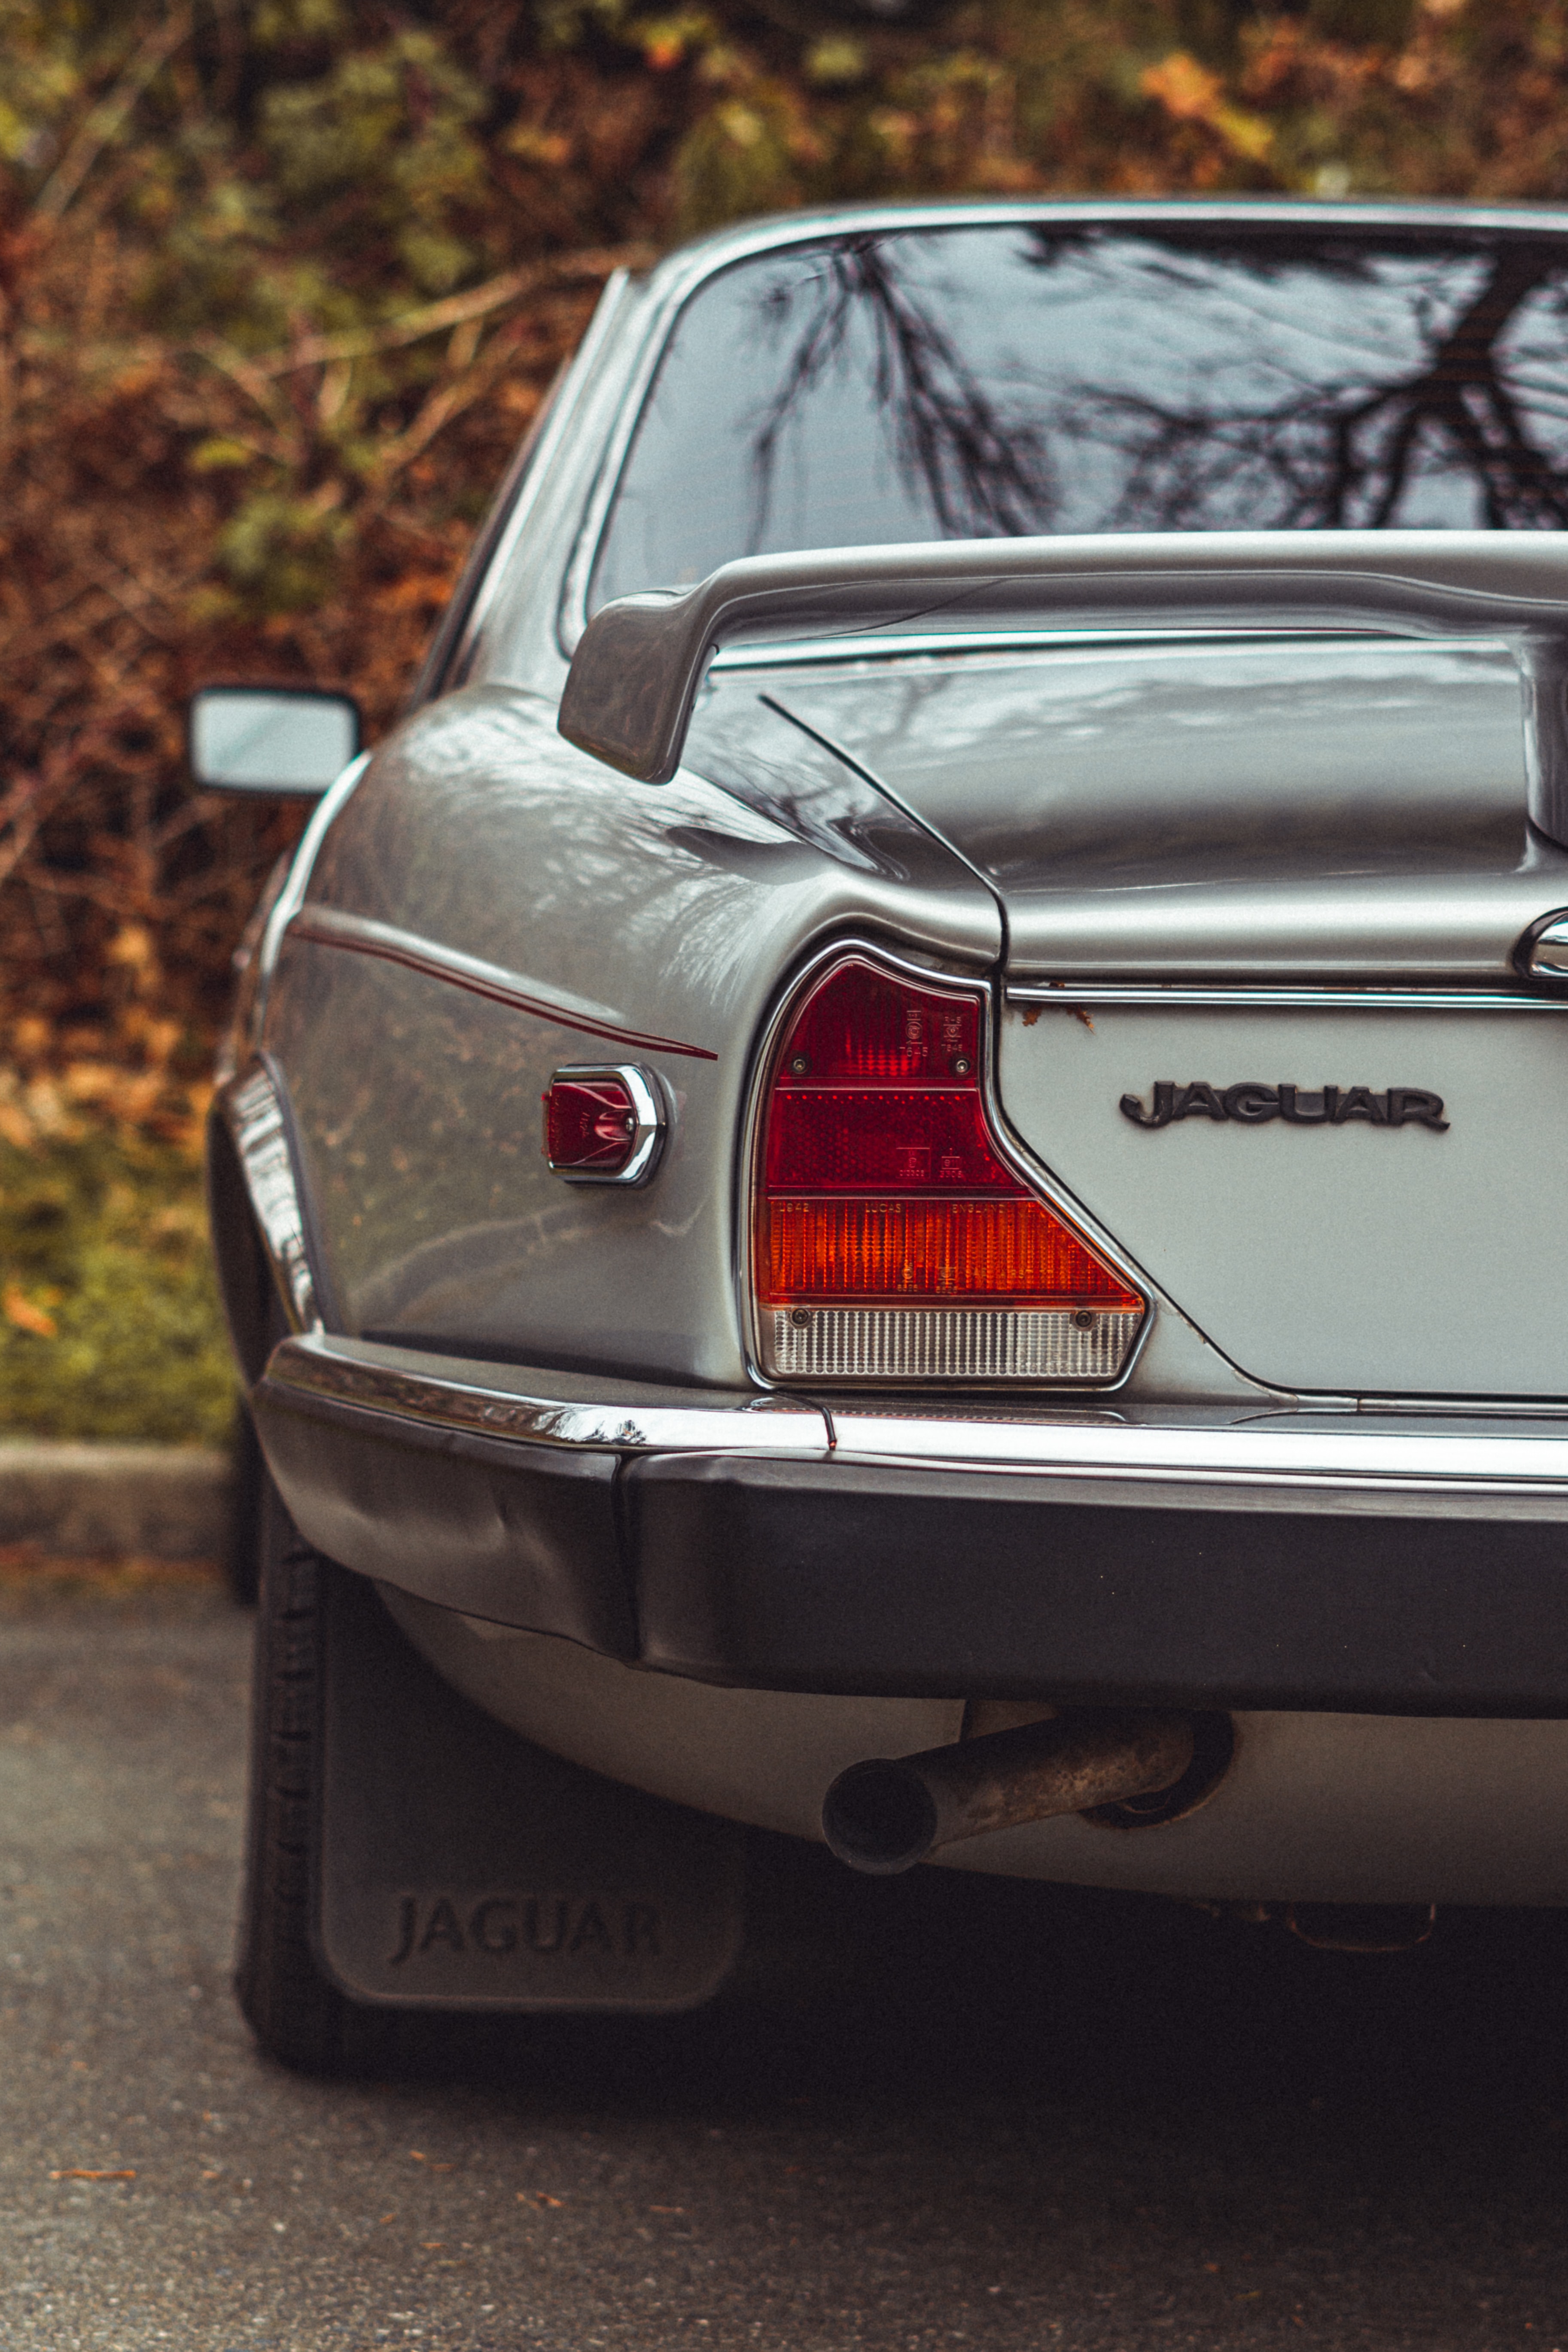 Download background jaguar, cars, car, machine, vintage, back view, rear view, retro